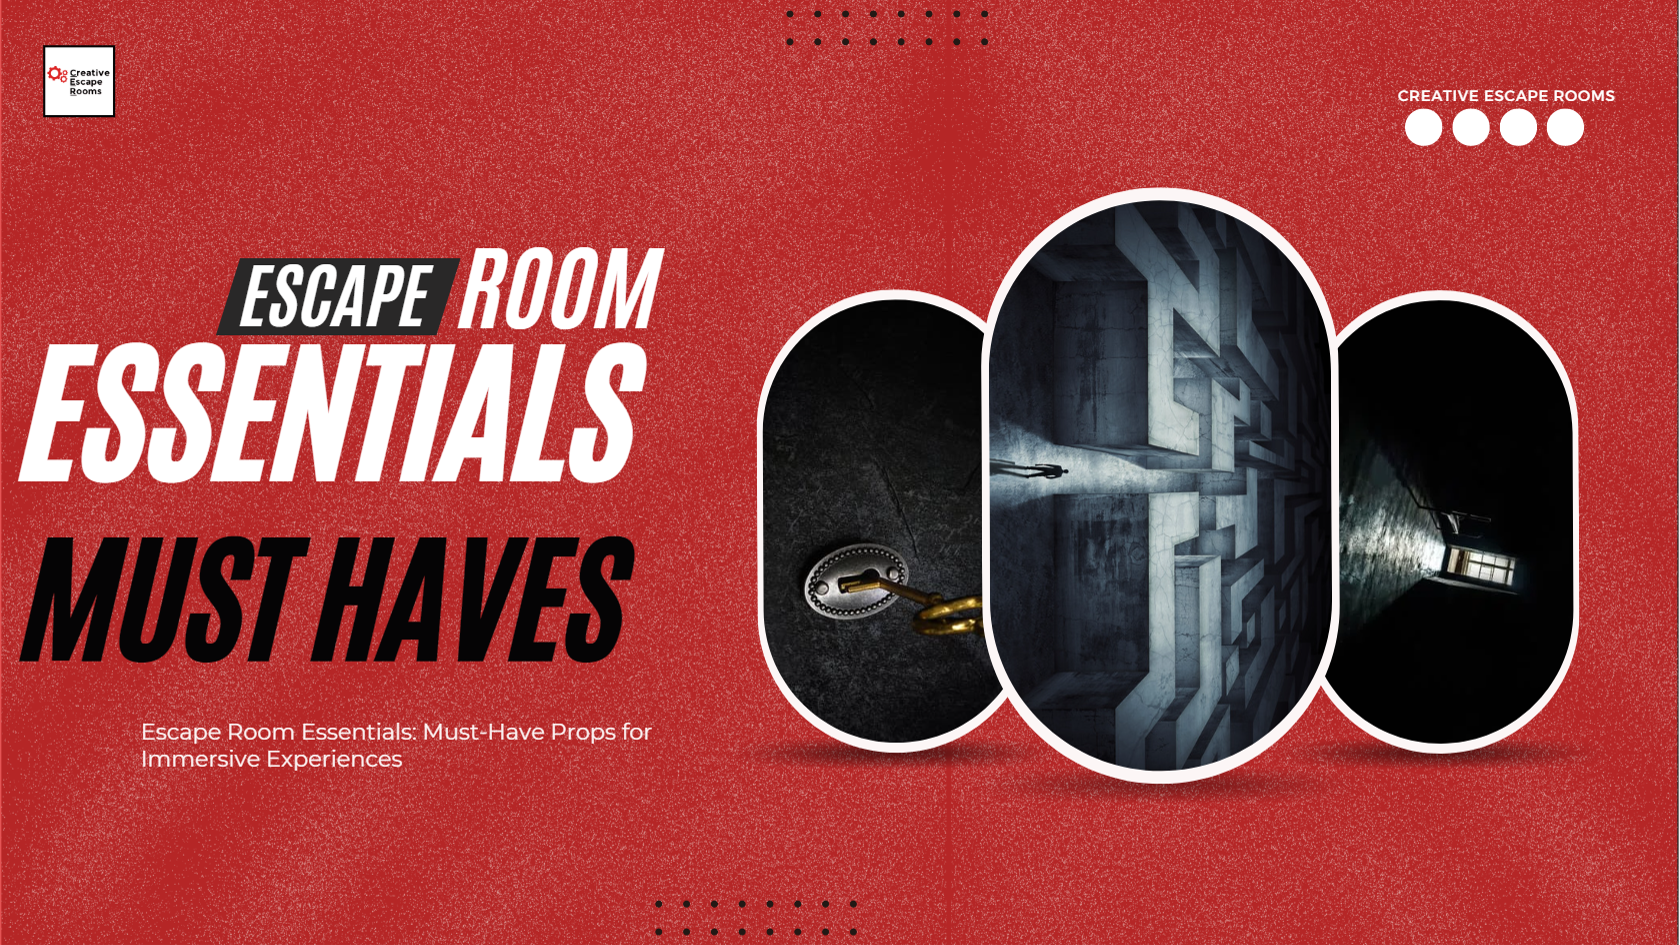 Les essentiels de l'Escape Room : des accessoires indispensables pour des expériences immersives